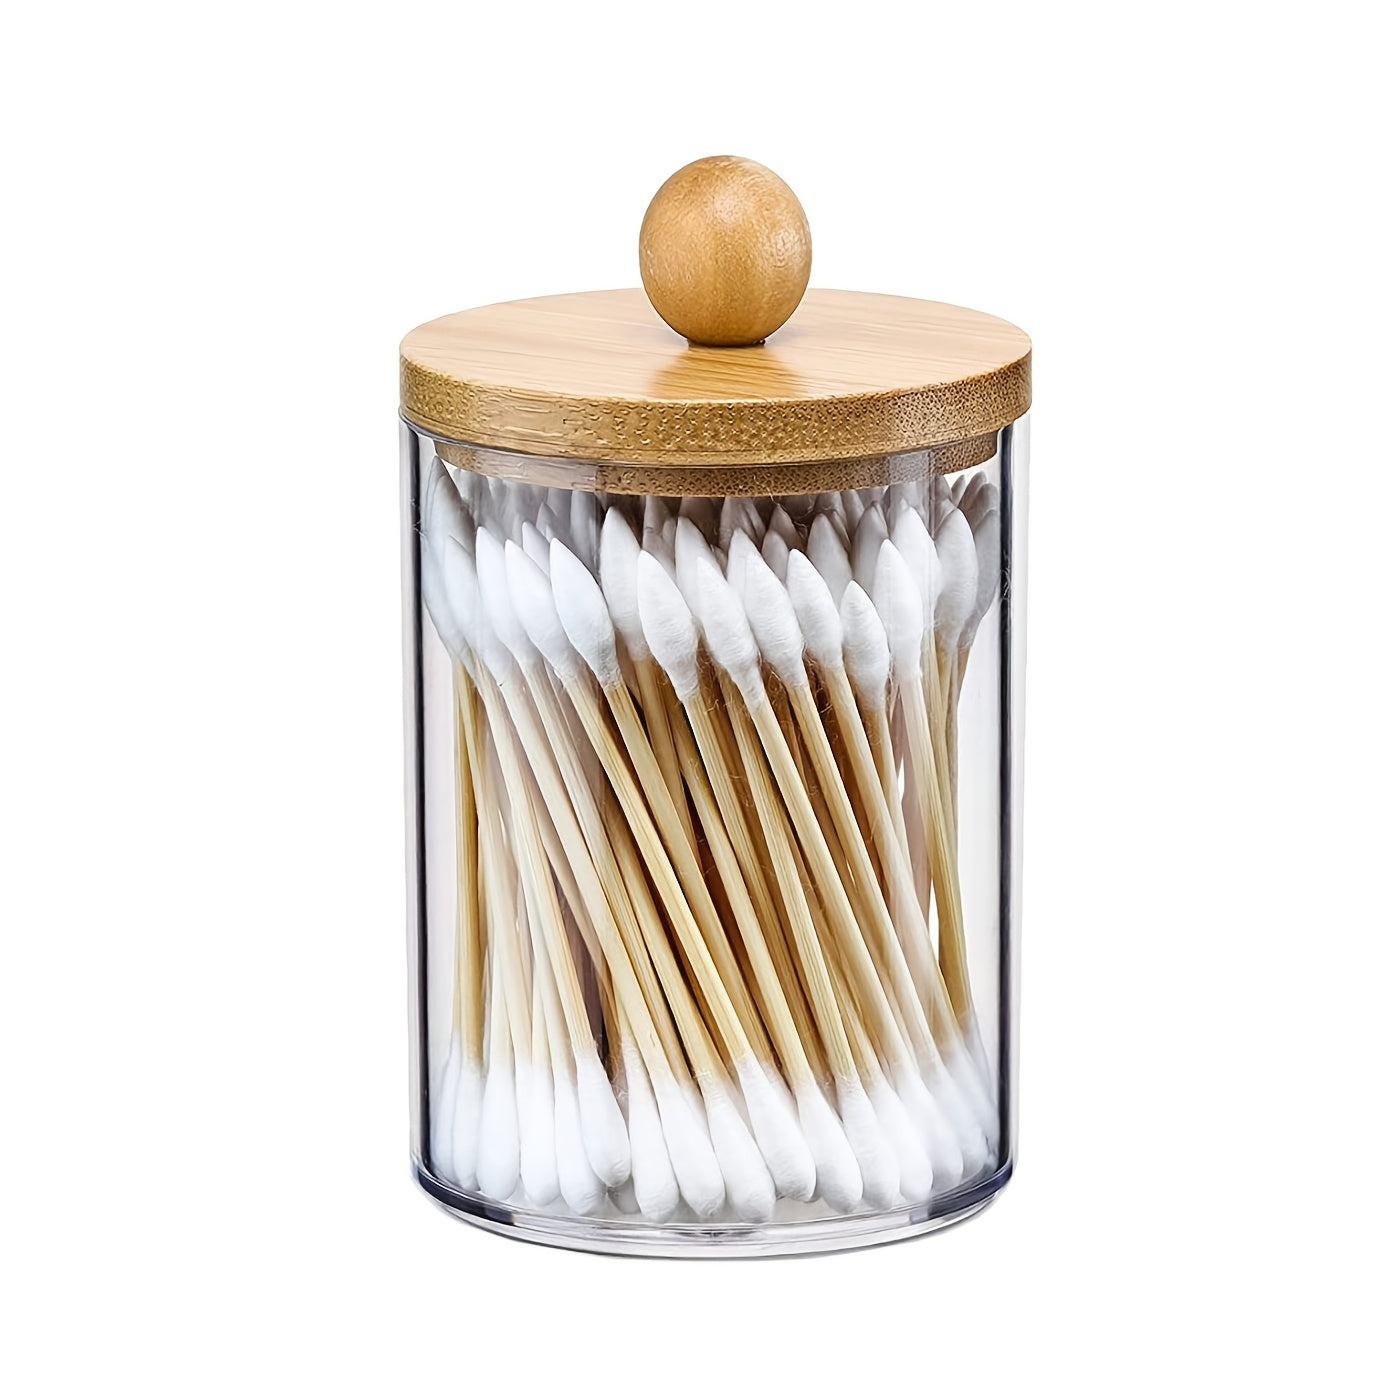 Bamboo Lid Apothecary Jar Set